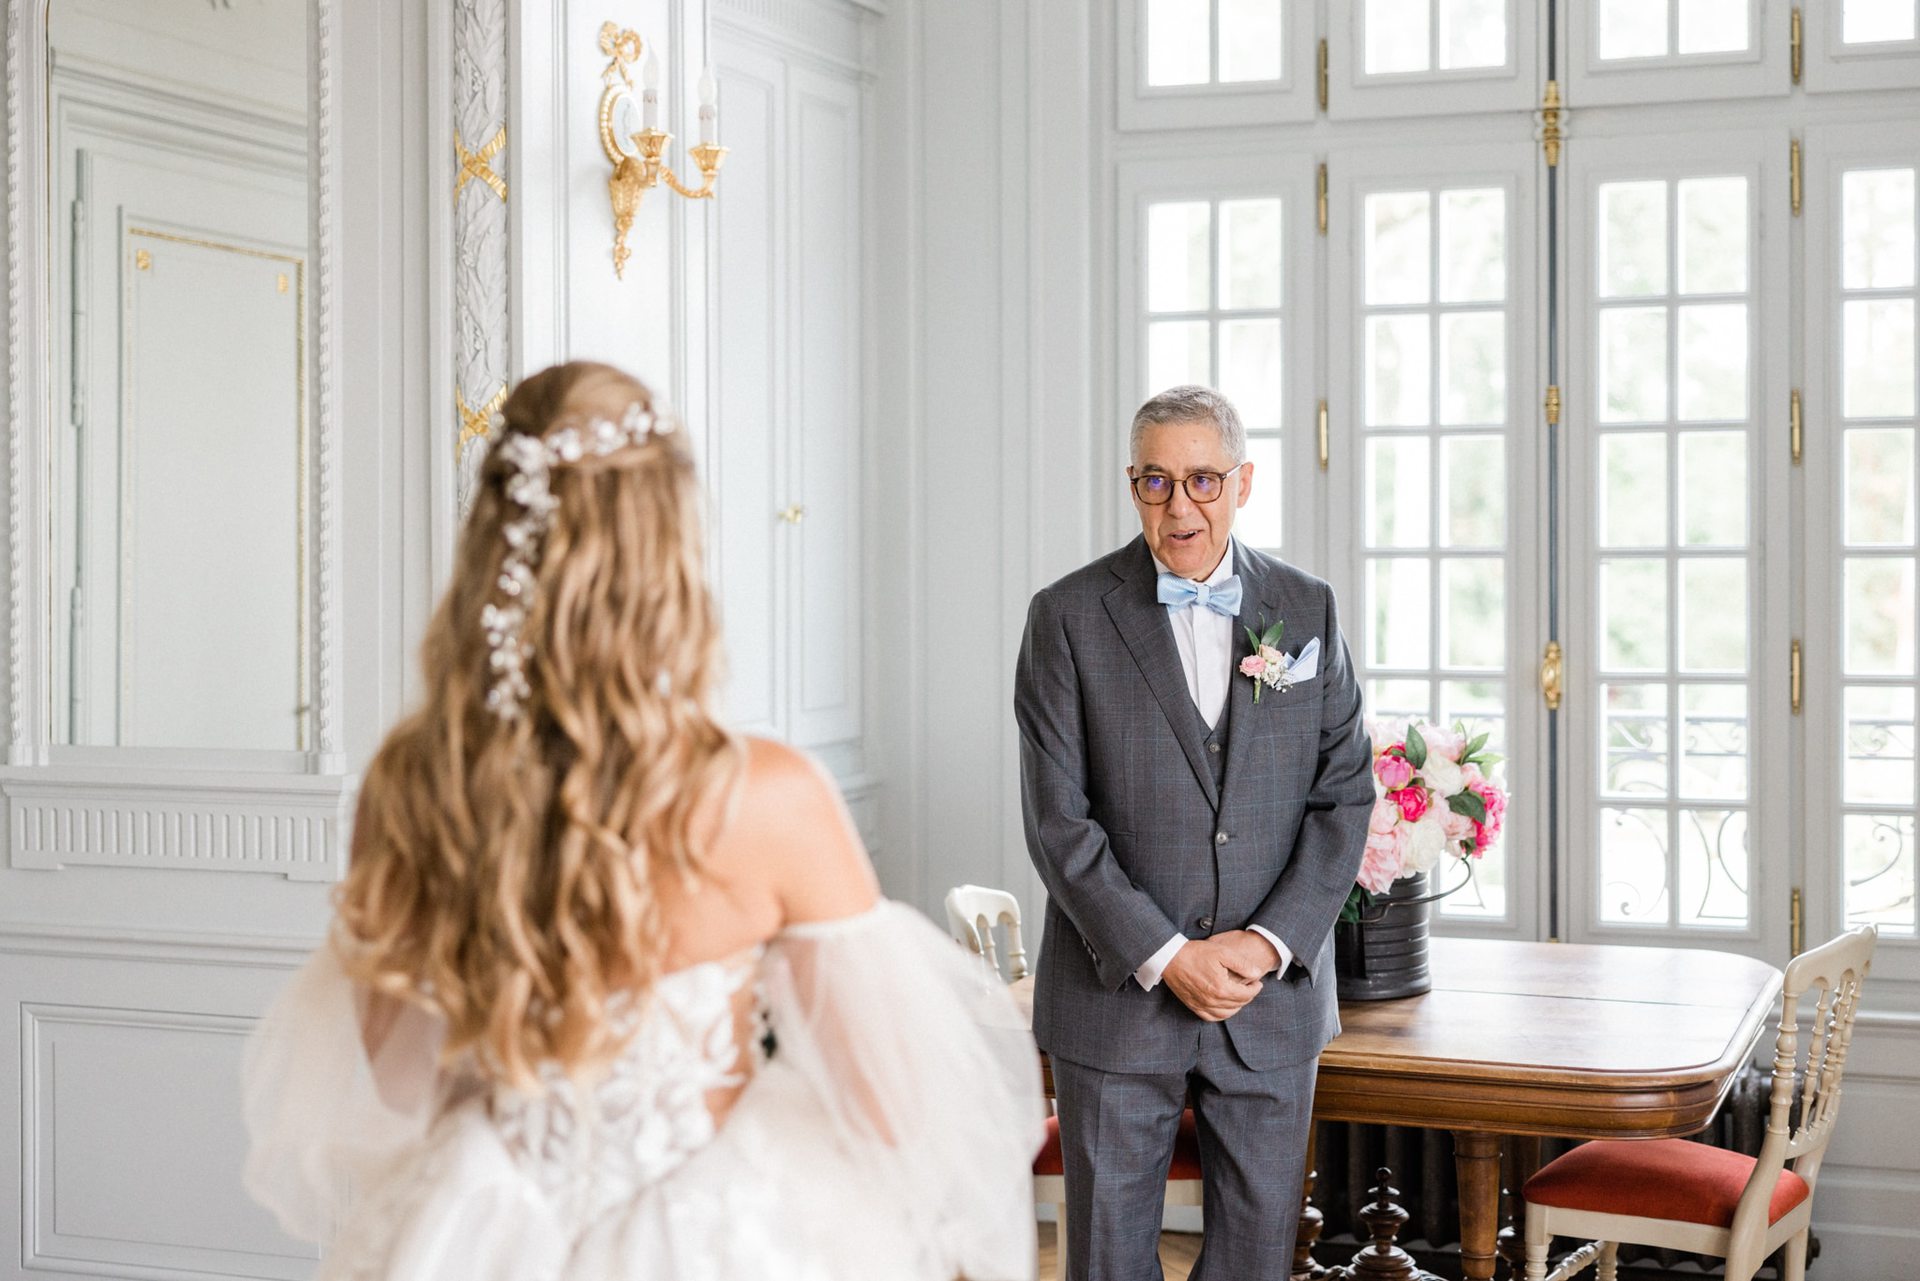 le papa découvre sa fille en robe de mariée